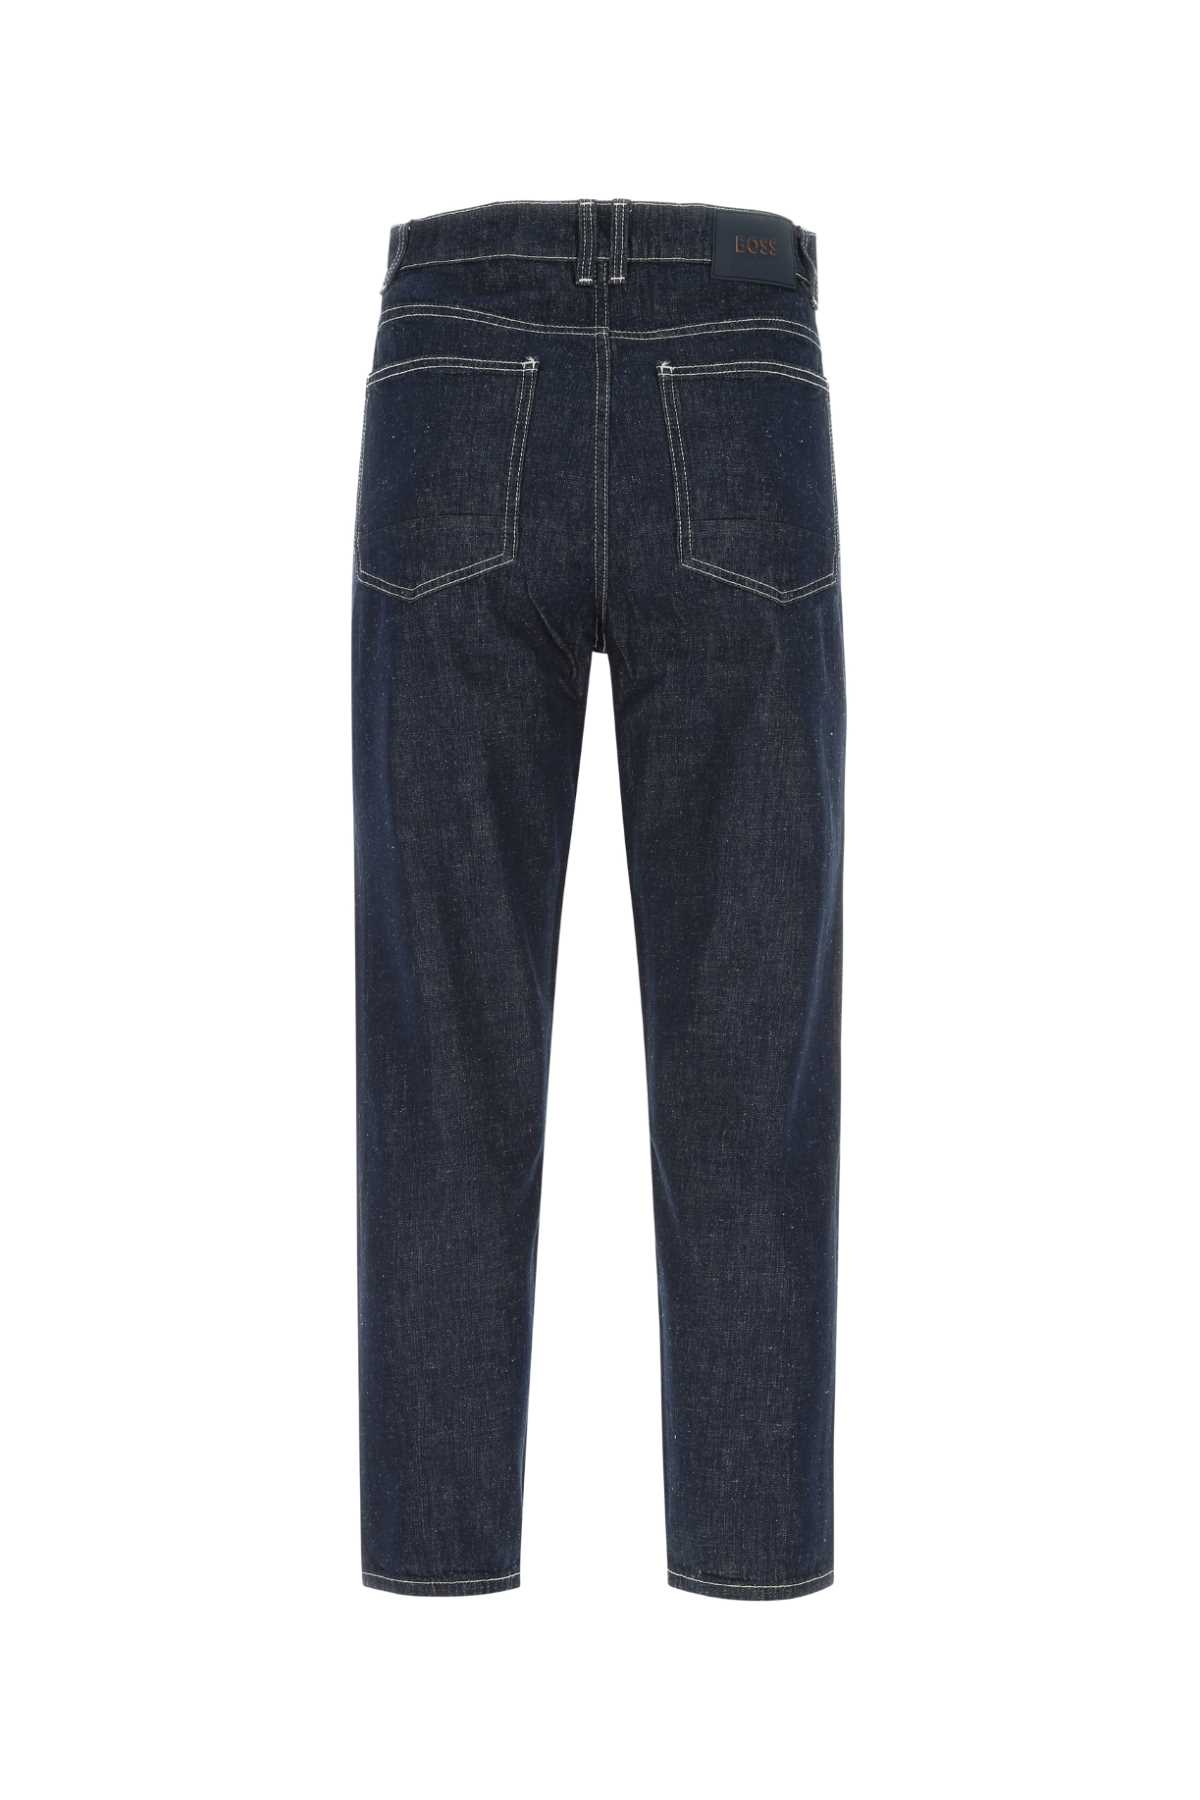 Hugo Boss Denim Jeans In 405